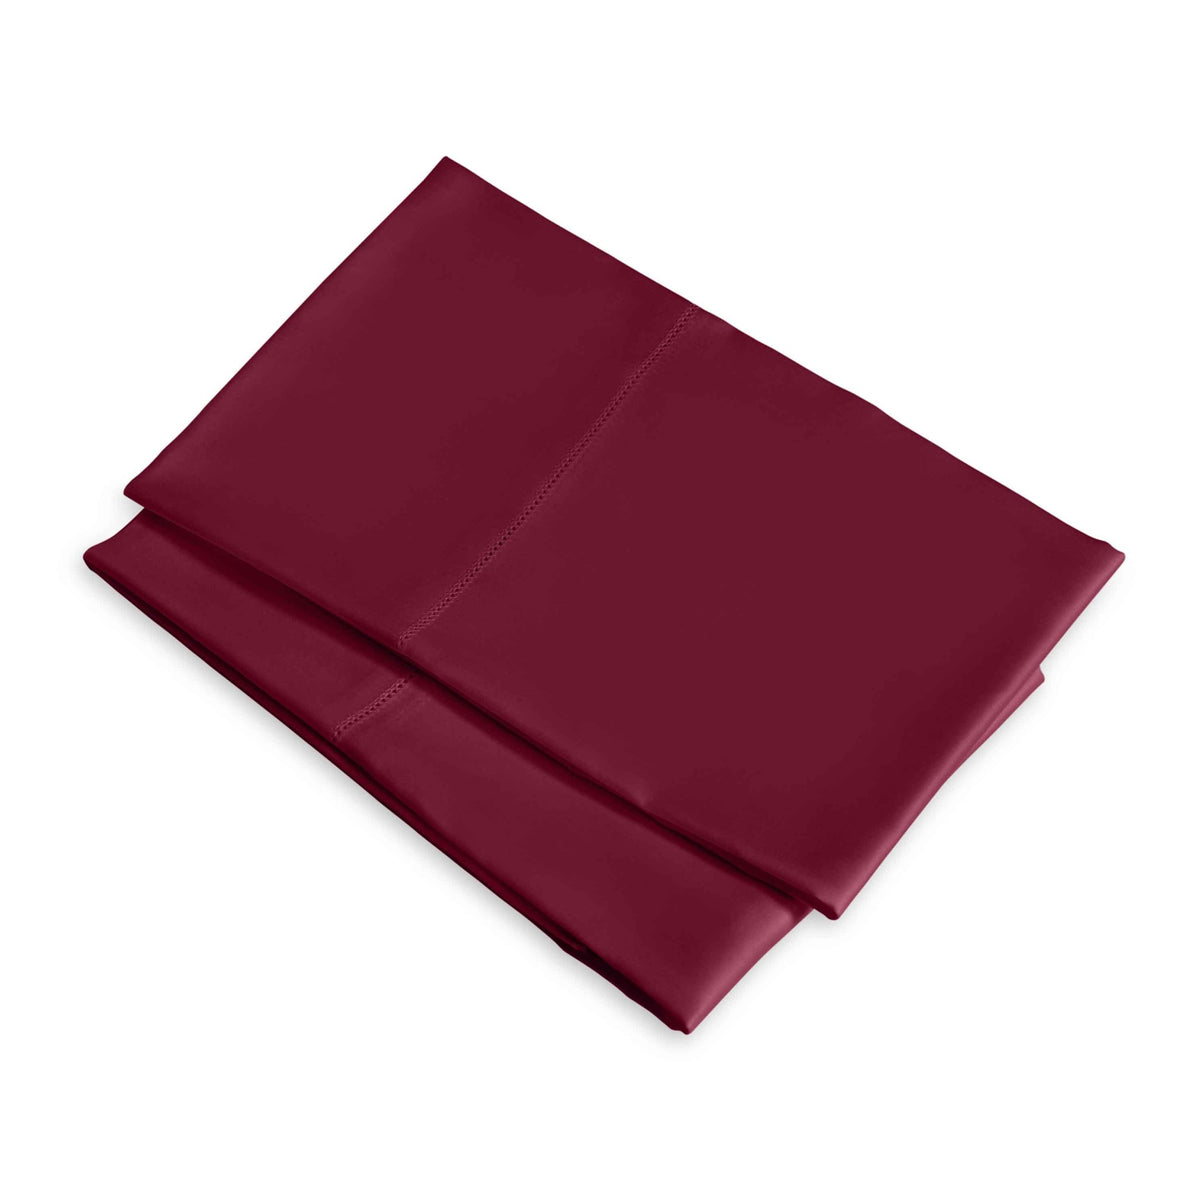 Clear Image of Signoria Raffaello Pillowcases in Cardinale Red Color